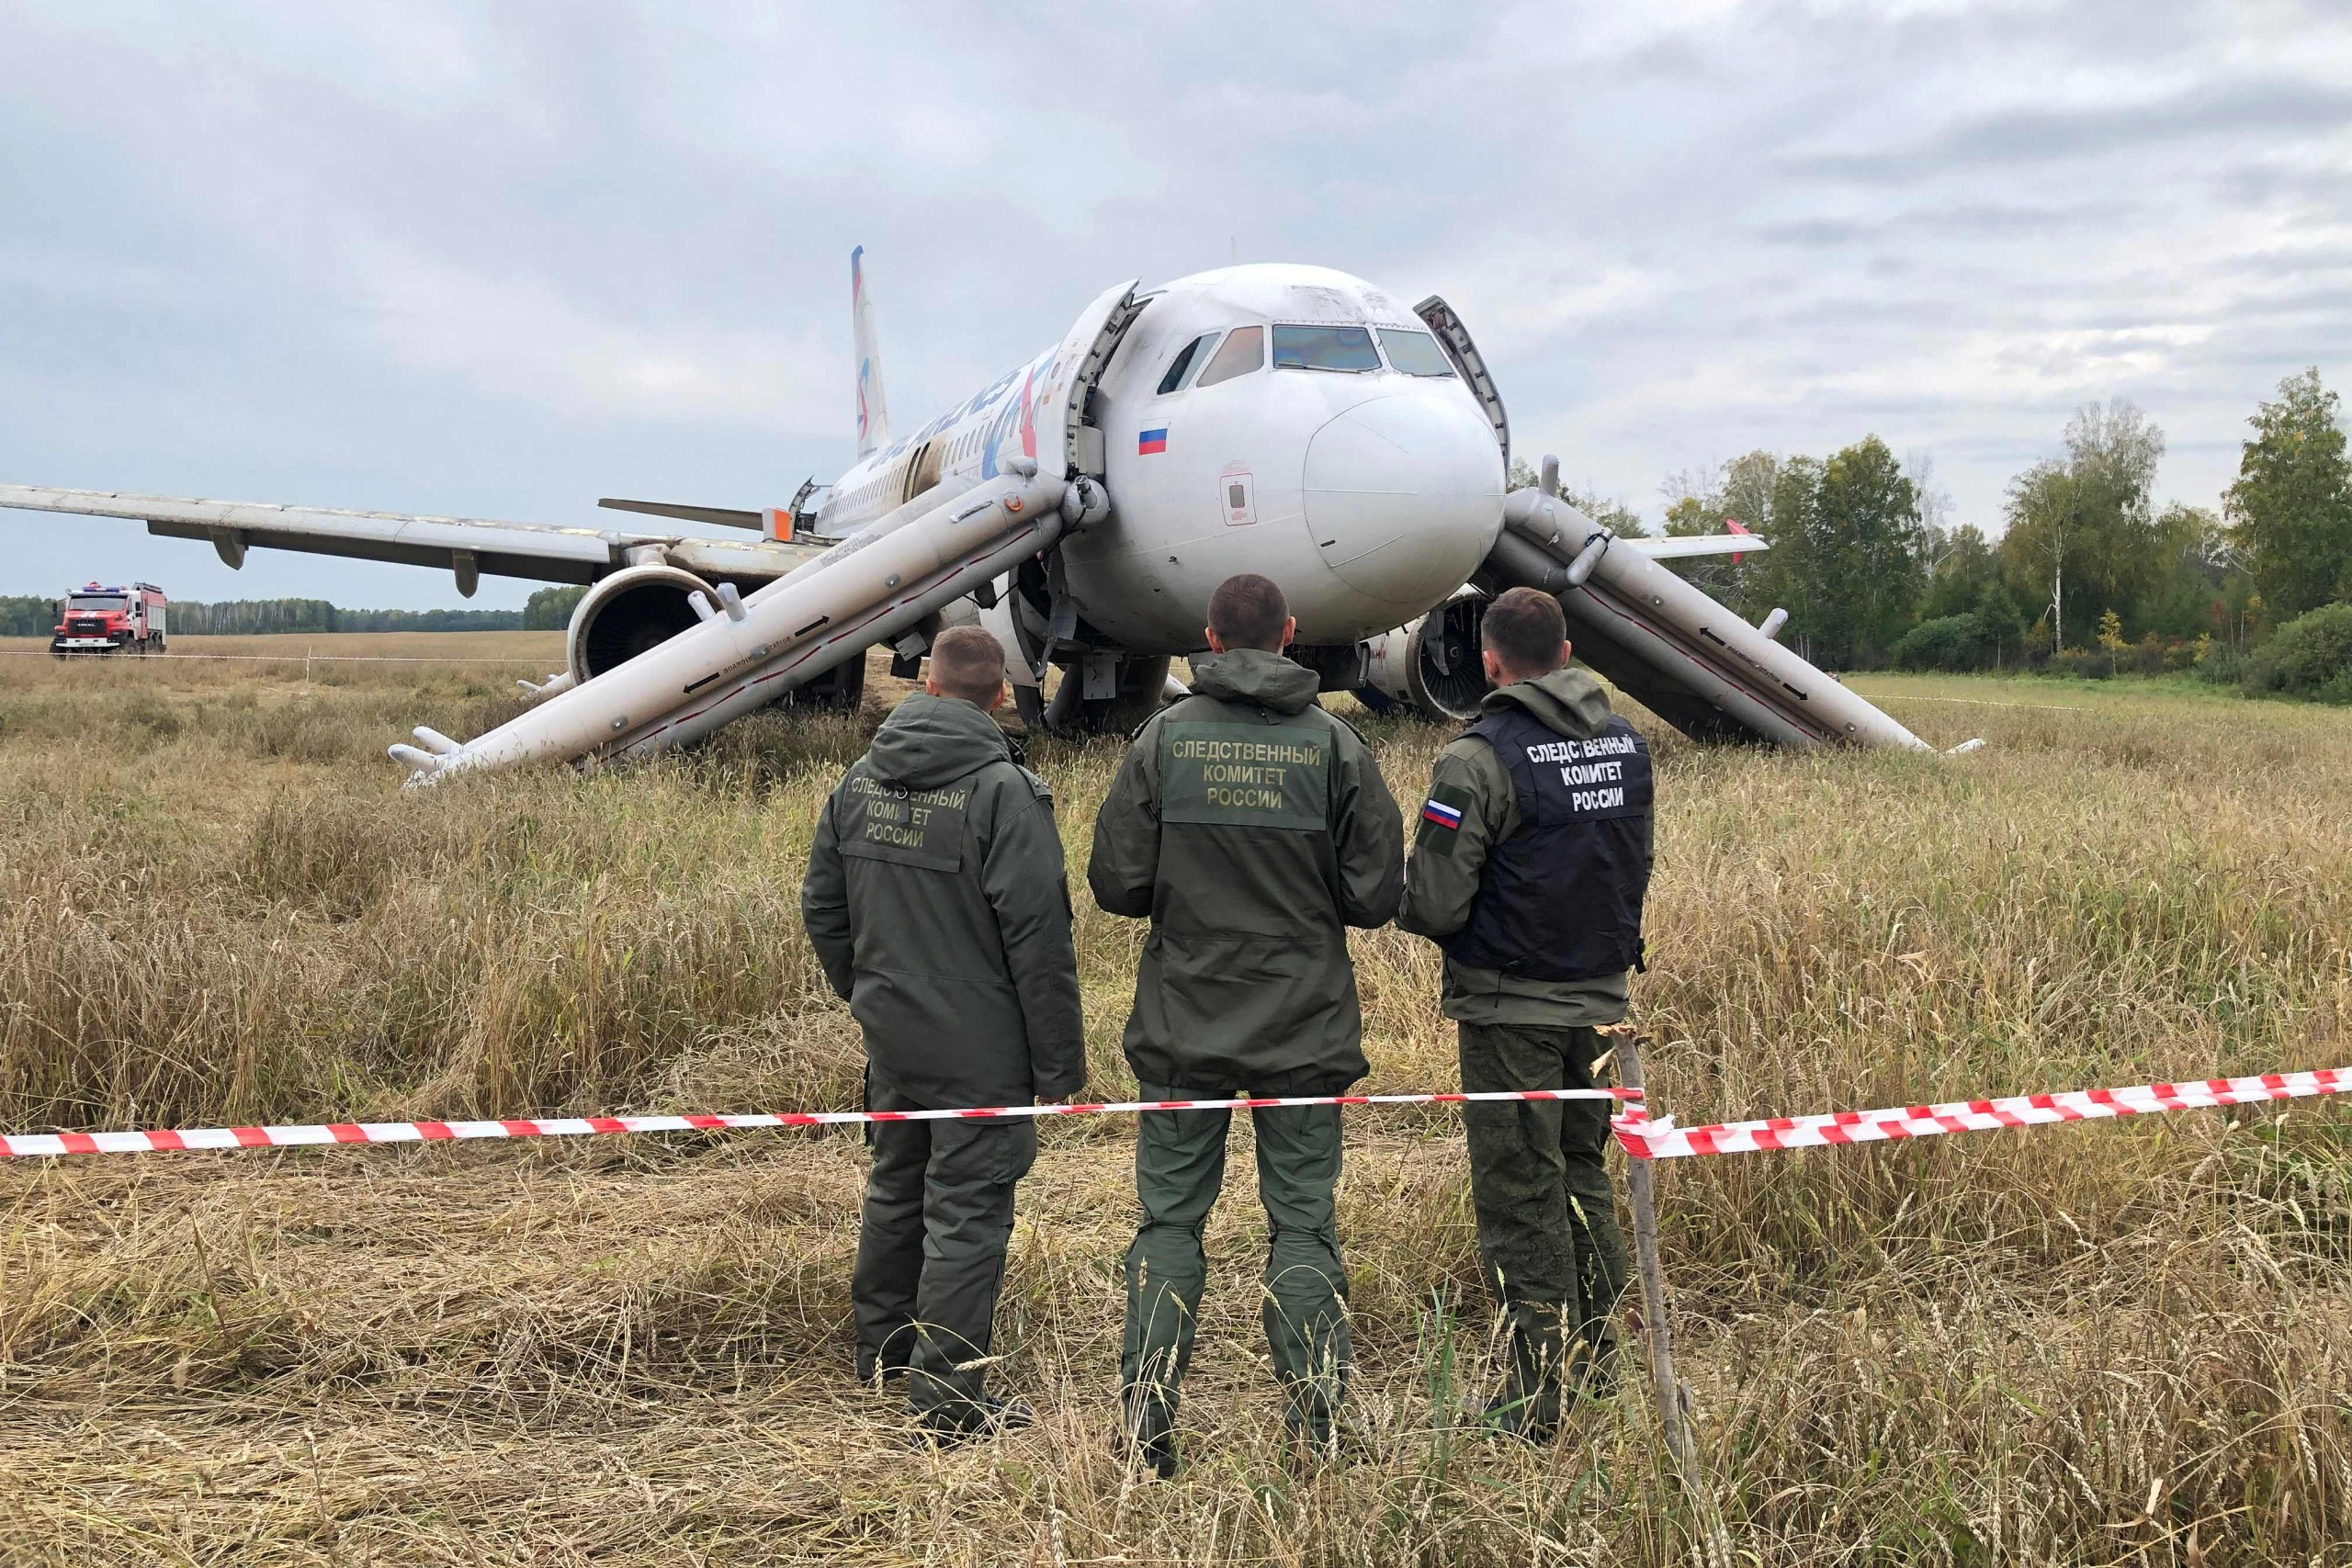 venäjälle ostettu ukrainasta lentokoneiden varaosia miljoonien arvosta sodan aikana, sanoo tutkivan journalismin sivusto